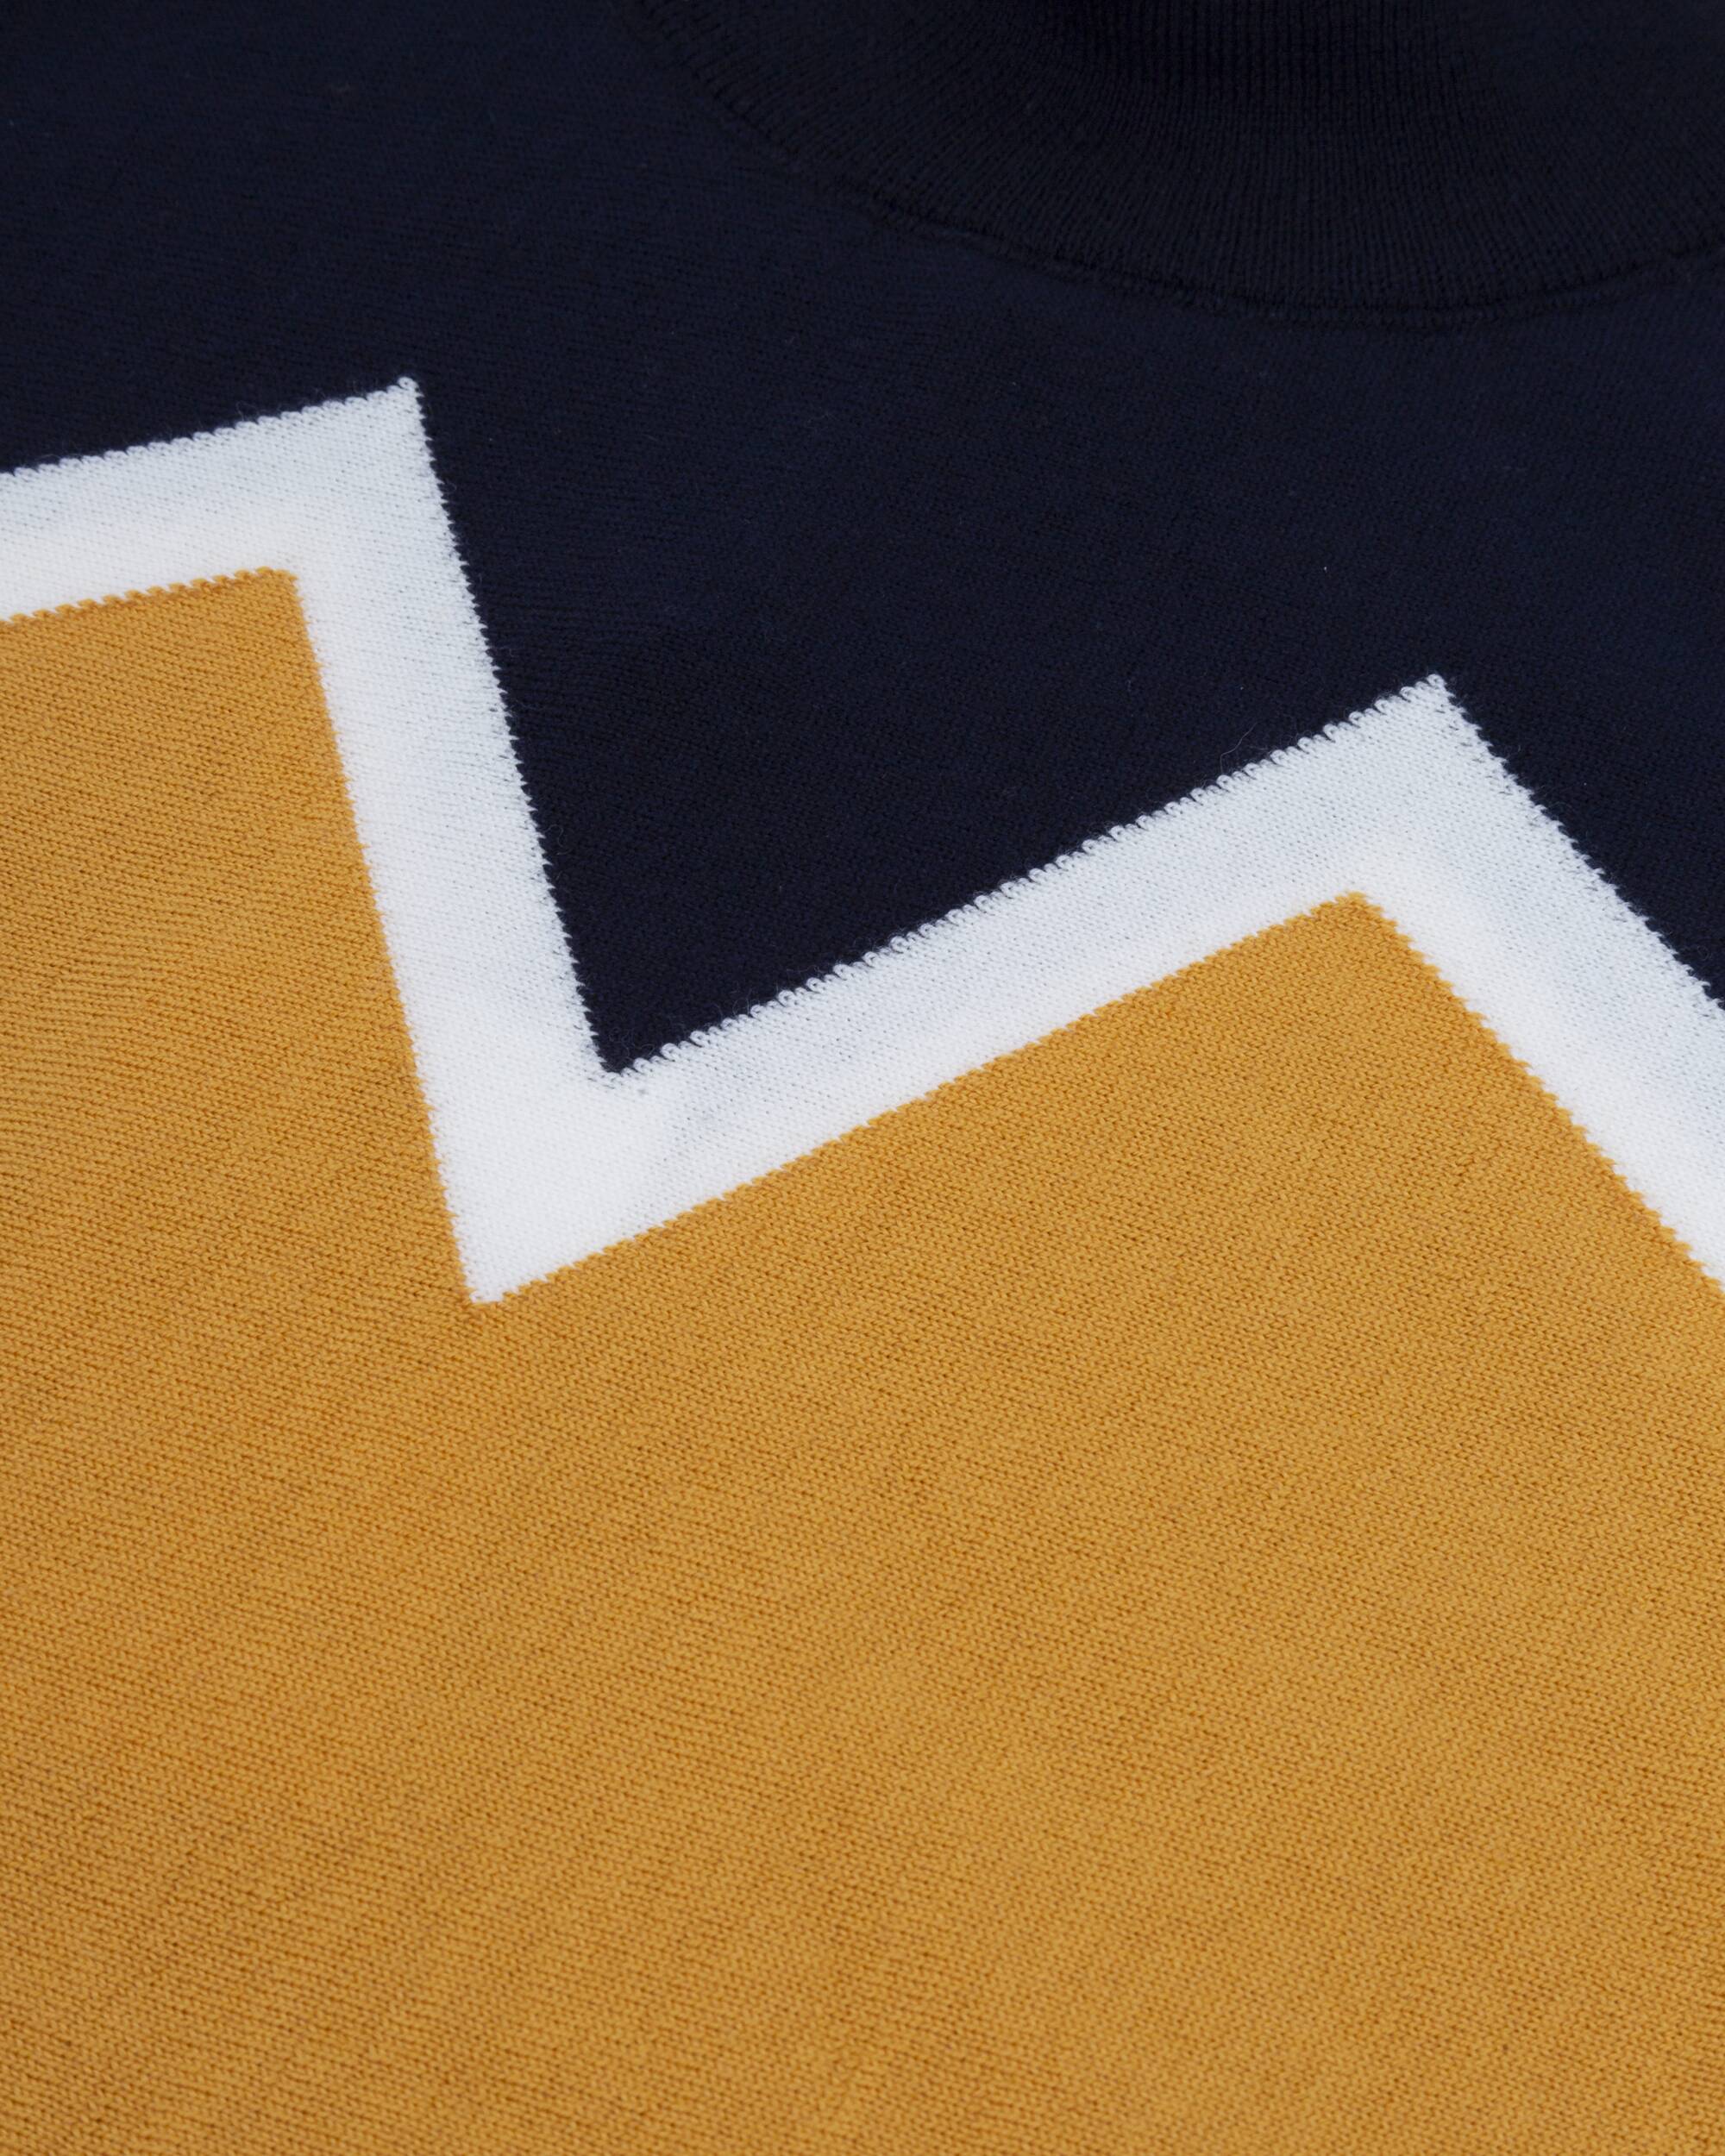 Pull "Winter Peak Navy Neck" en orange et bleu en laine mérinos 100% biologique de Brava Fabrics